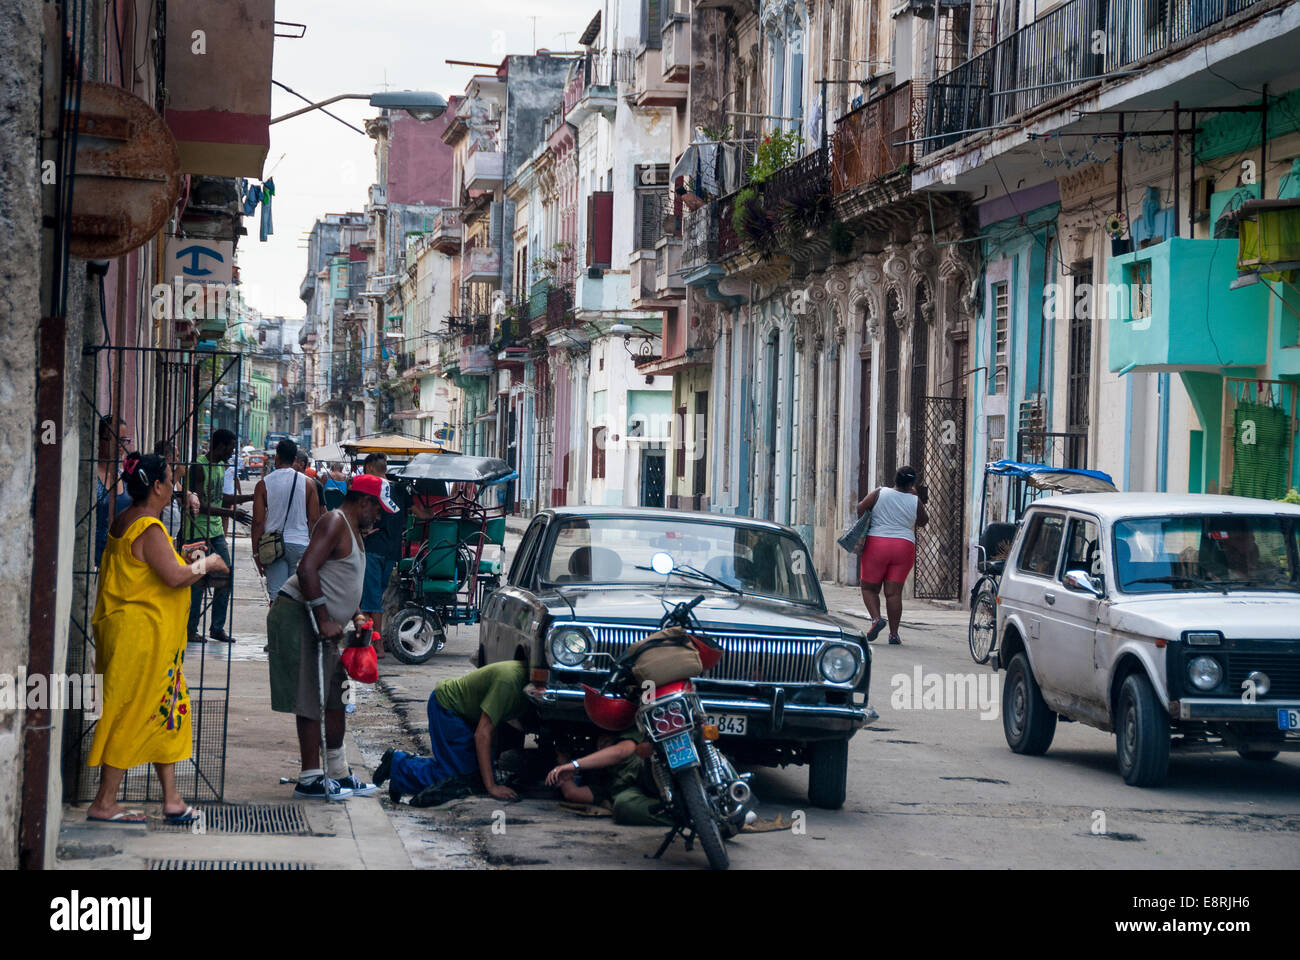 Havana Cuba - curiosi guarda come due uomini cercano di fare le riparazioni improvvisate su un vintage americano auto in un Central Havana street. Foto Stock